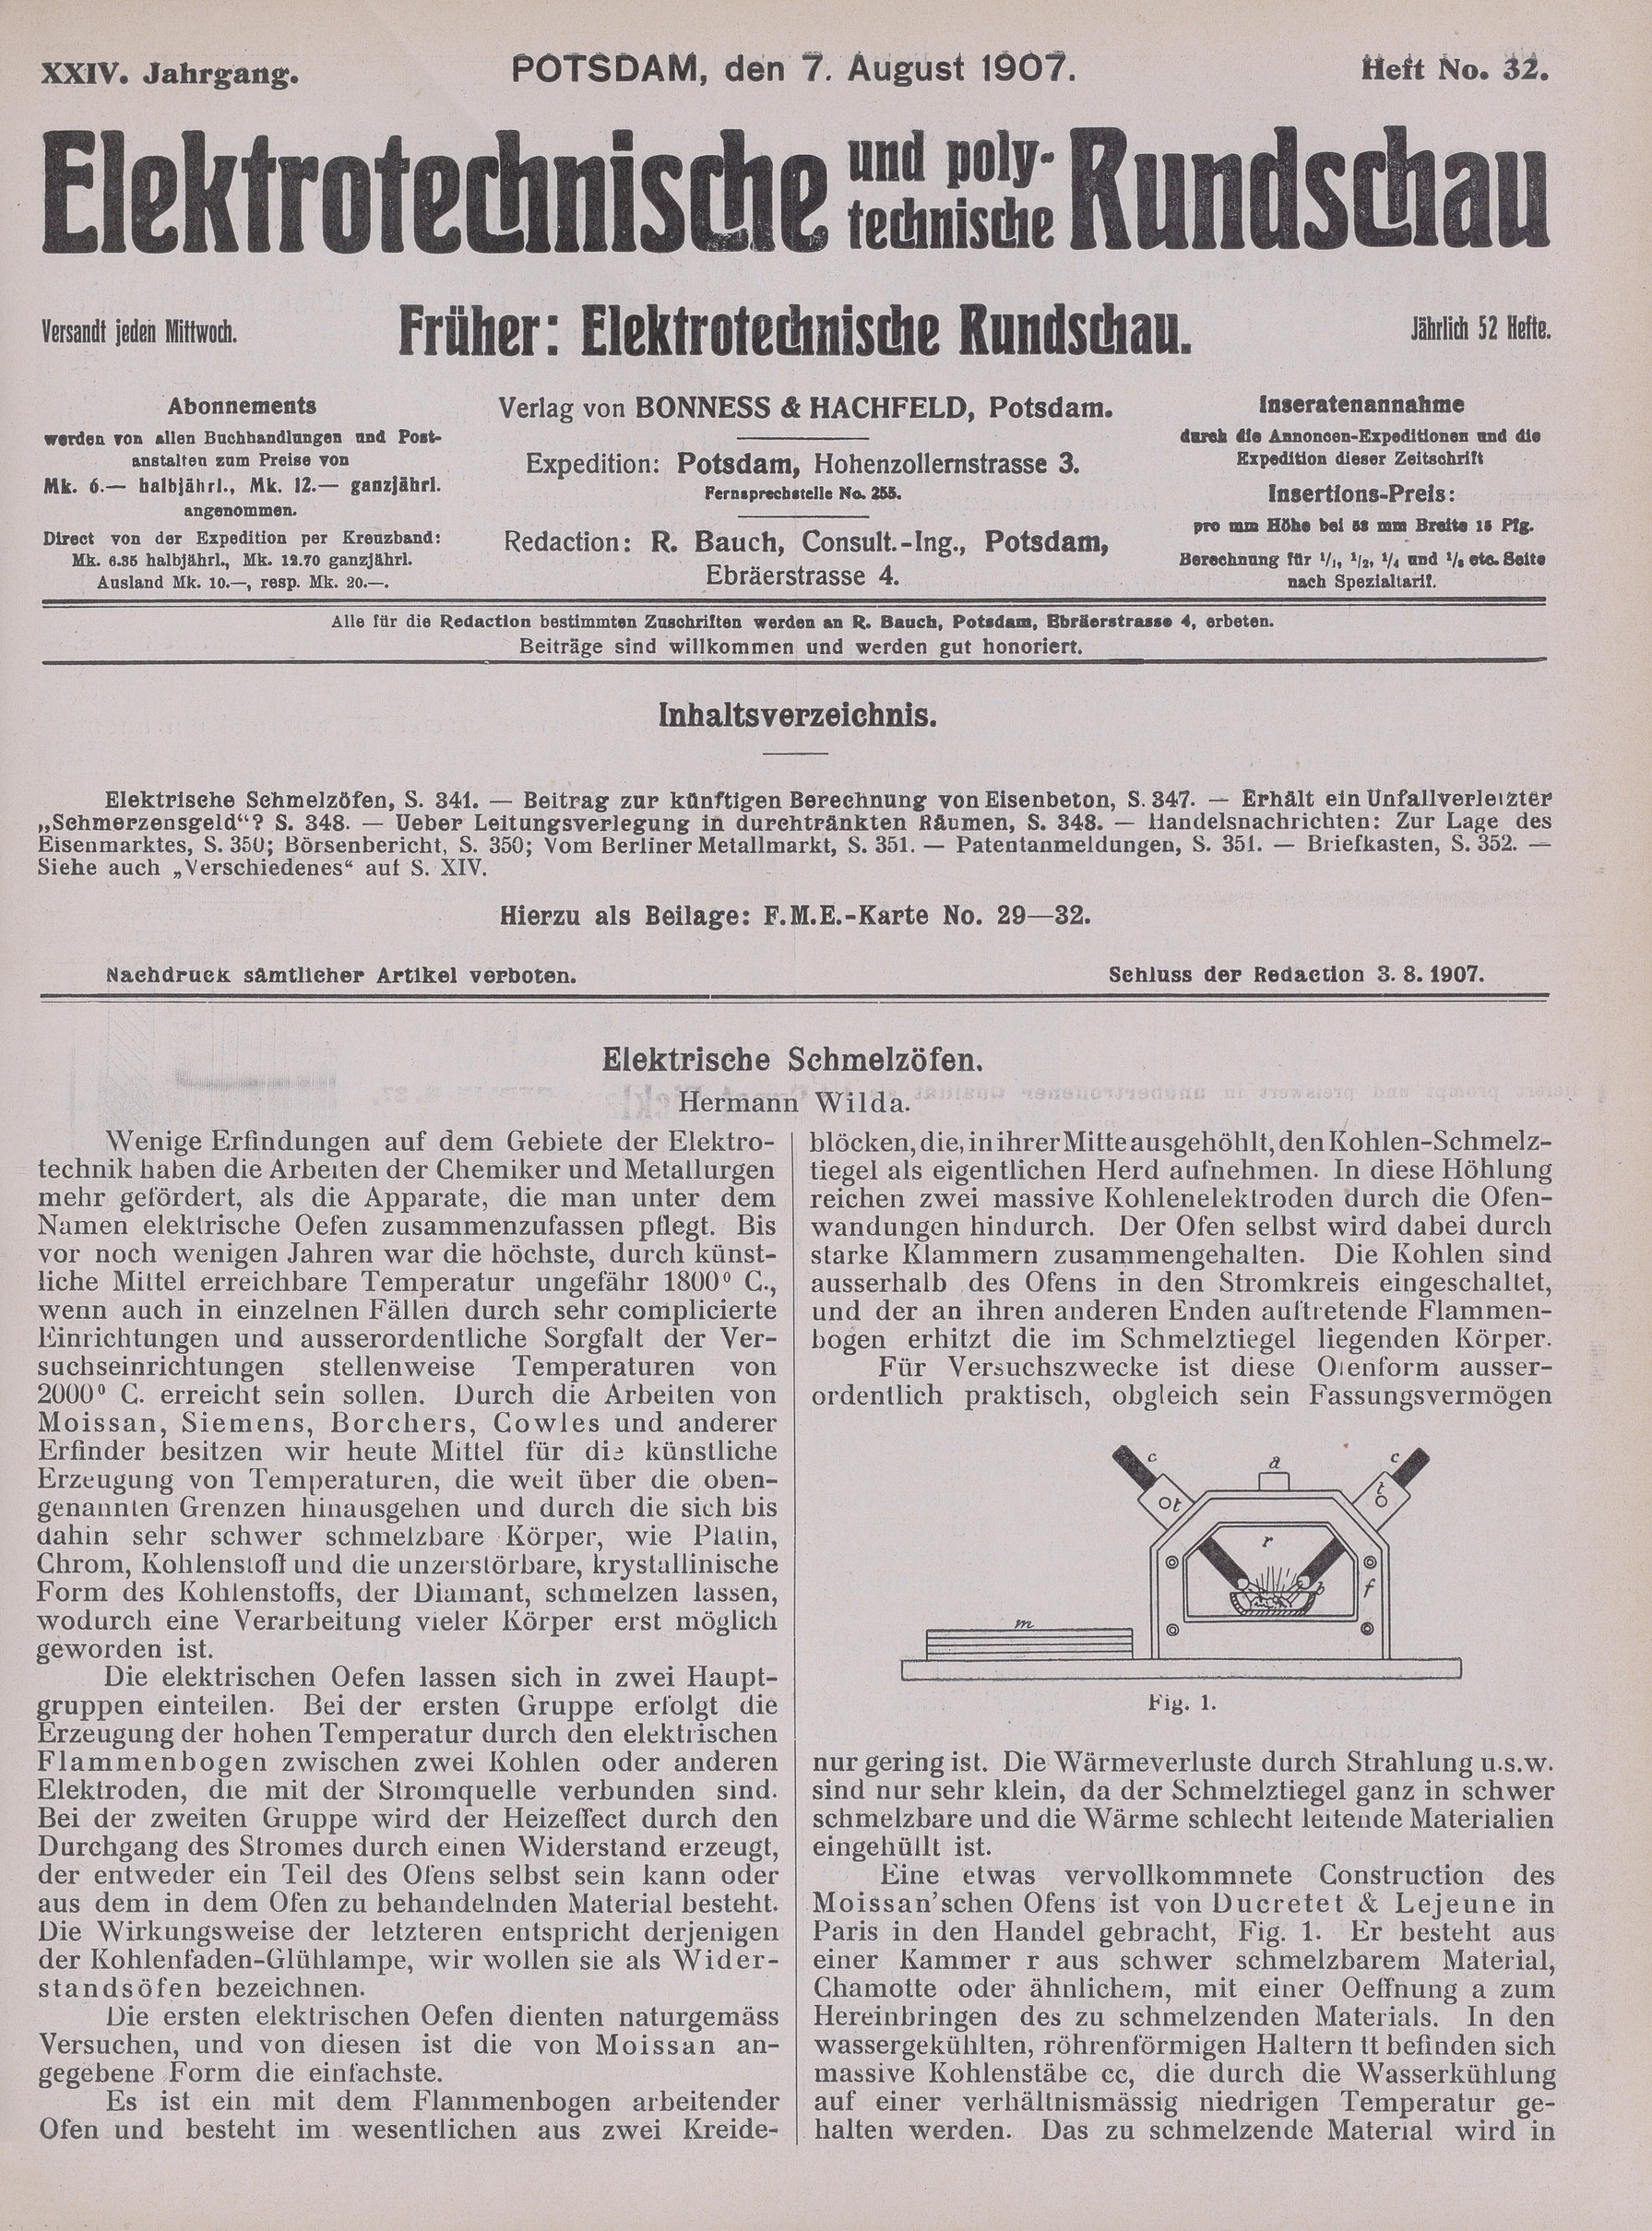 Elektrotechnische und polytechnische Rundschau, XXIV. Jahrgang, Heft No. 32